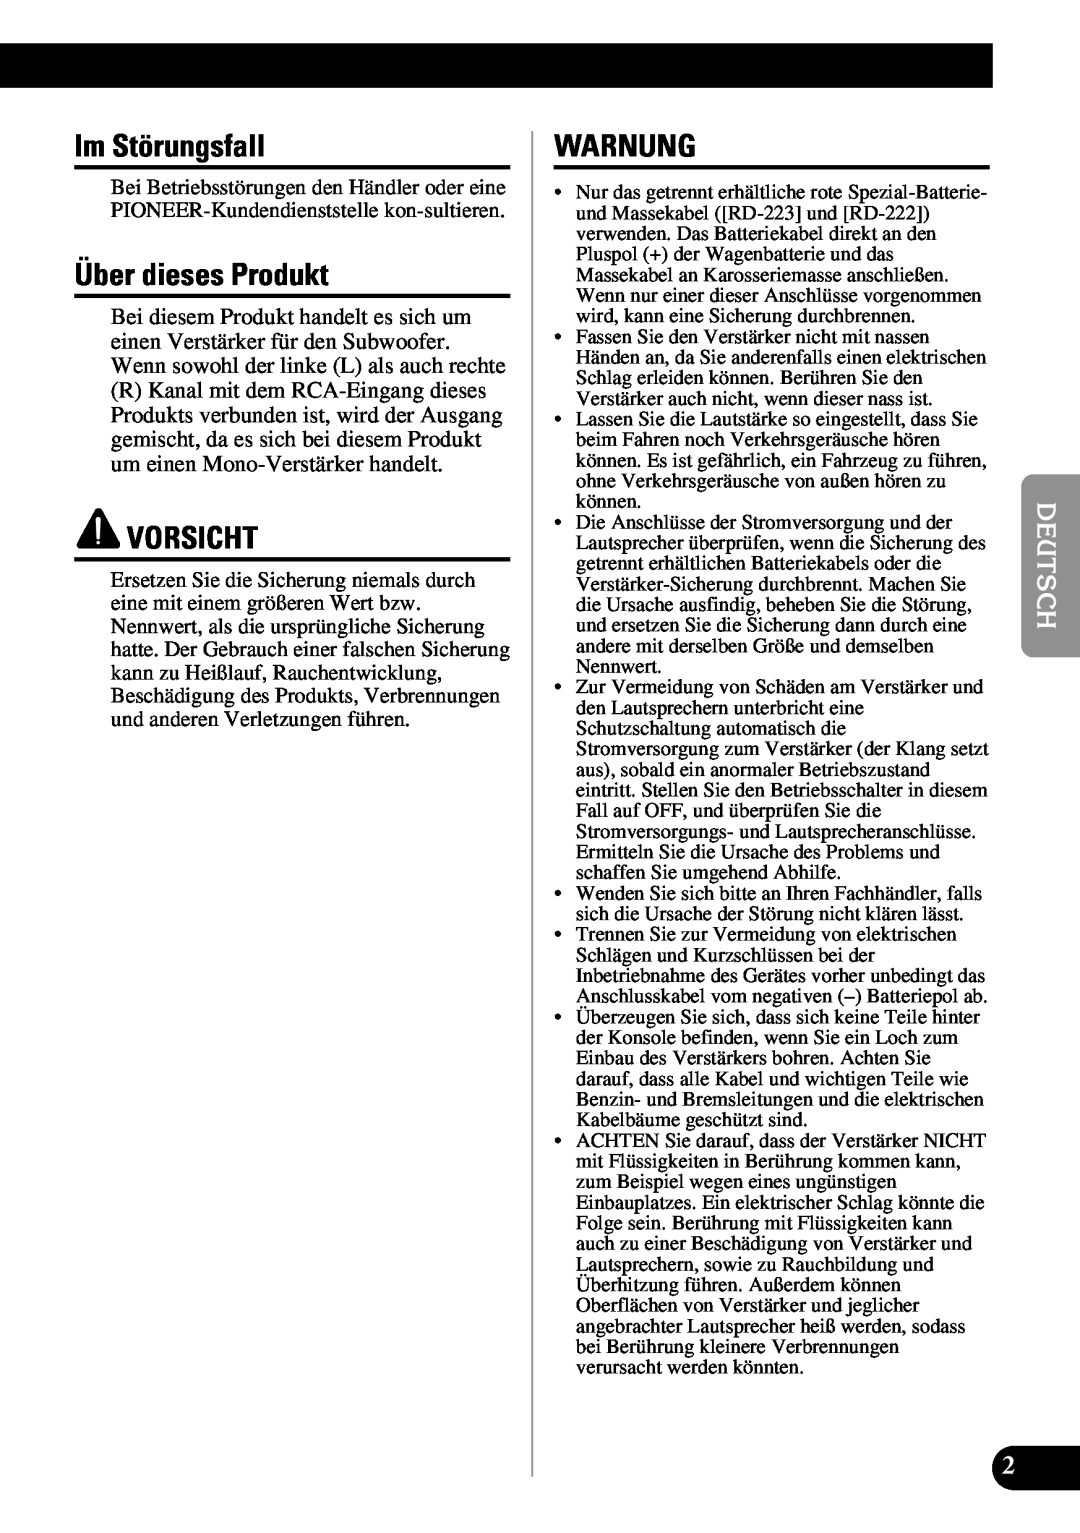 Pioneer PRS-D1100M owner manual Im Störungsfall, Über dieses Produkt, Vorsicht, Warnung 